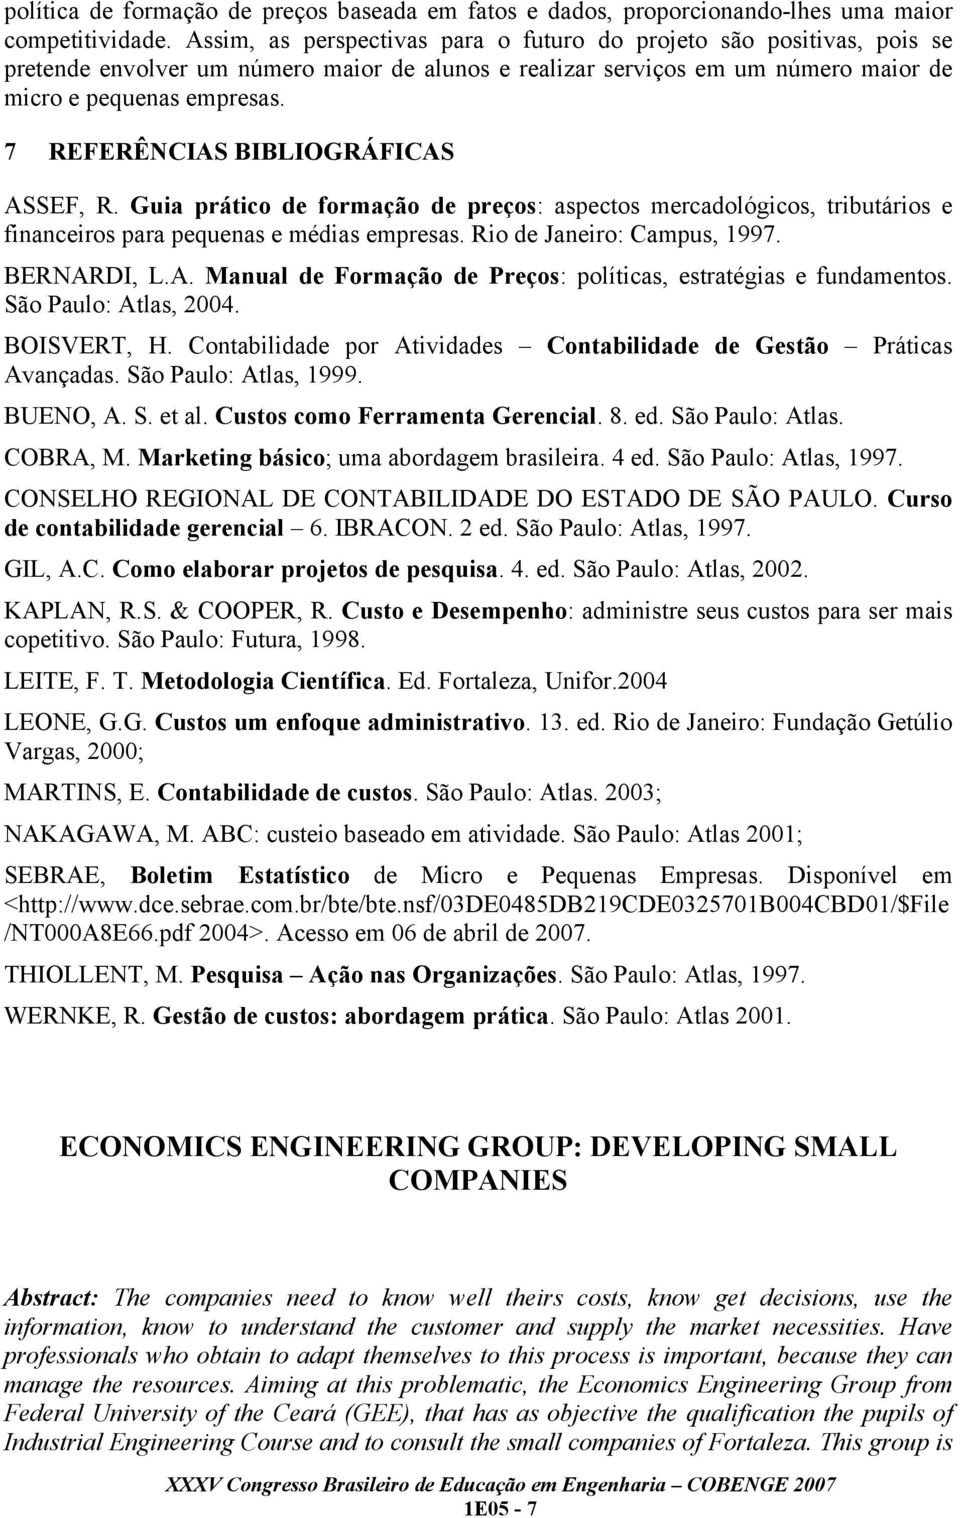 7 REFERÊNCIAS BIBLIOGRÁFICAS ASSEF, R. Guia prático de formação de preços: aspectos mercadológicos, tributários e financeiros para pequenas e médias empresas. Rio de Janeiro: Campus, 1997.